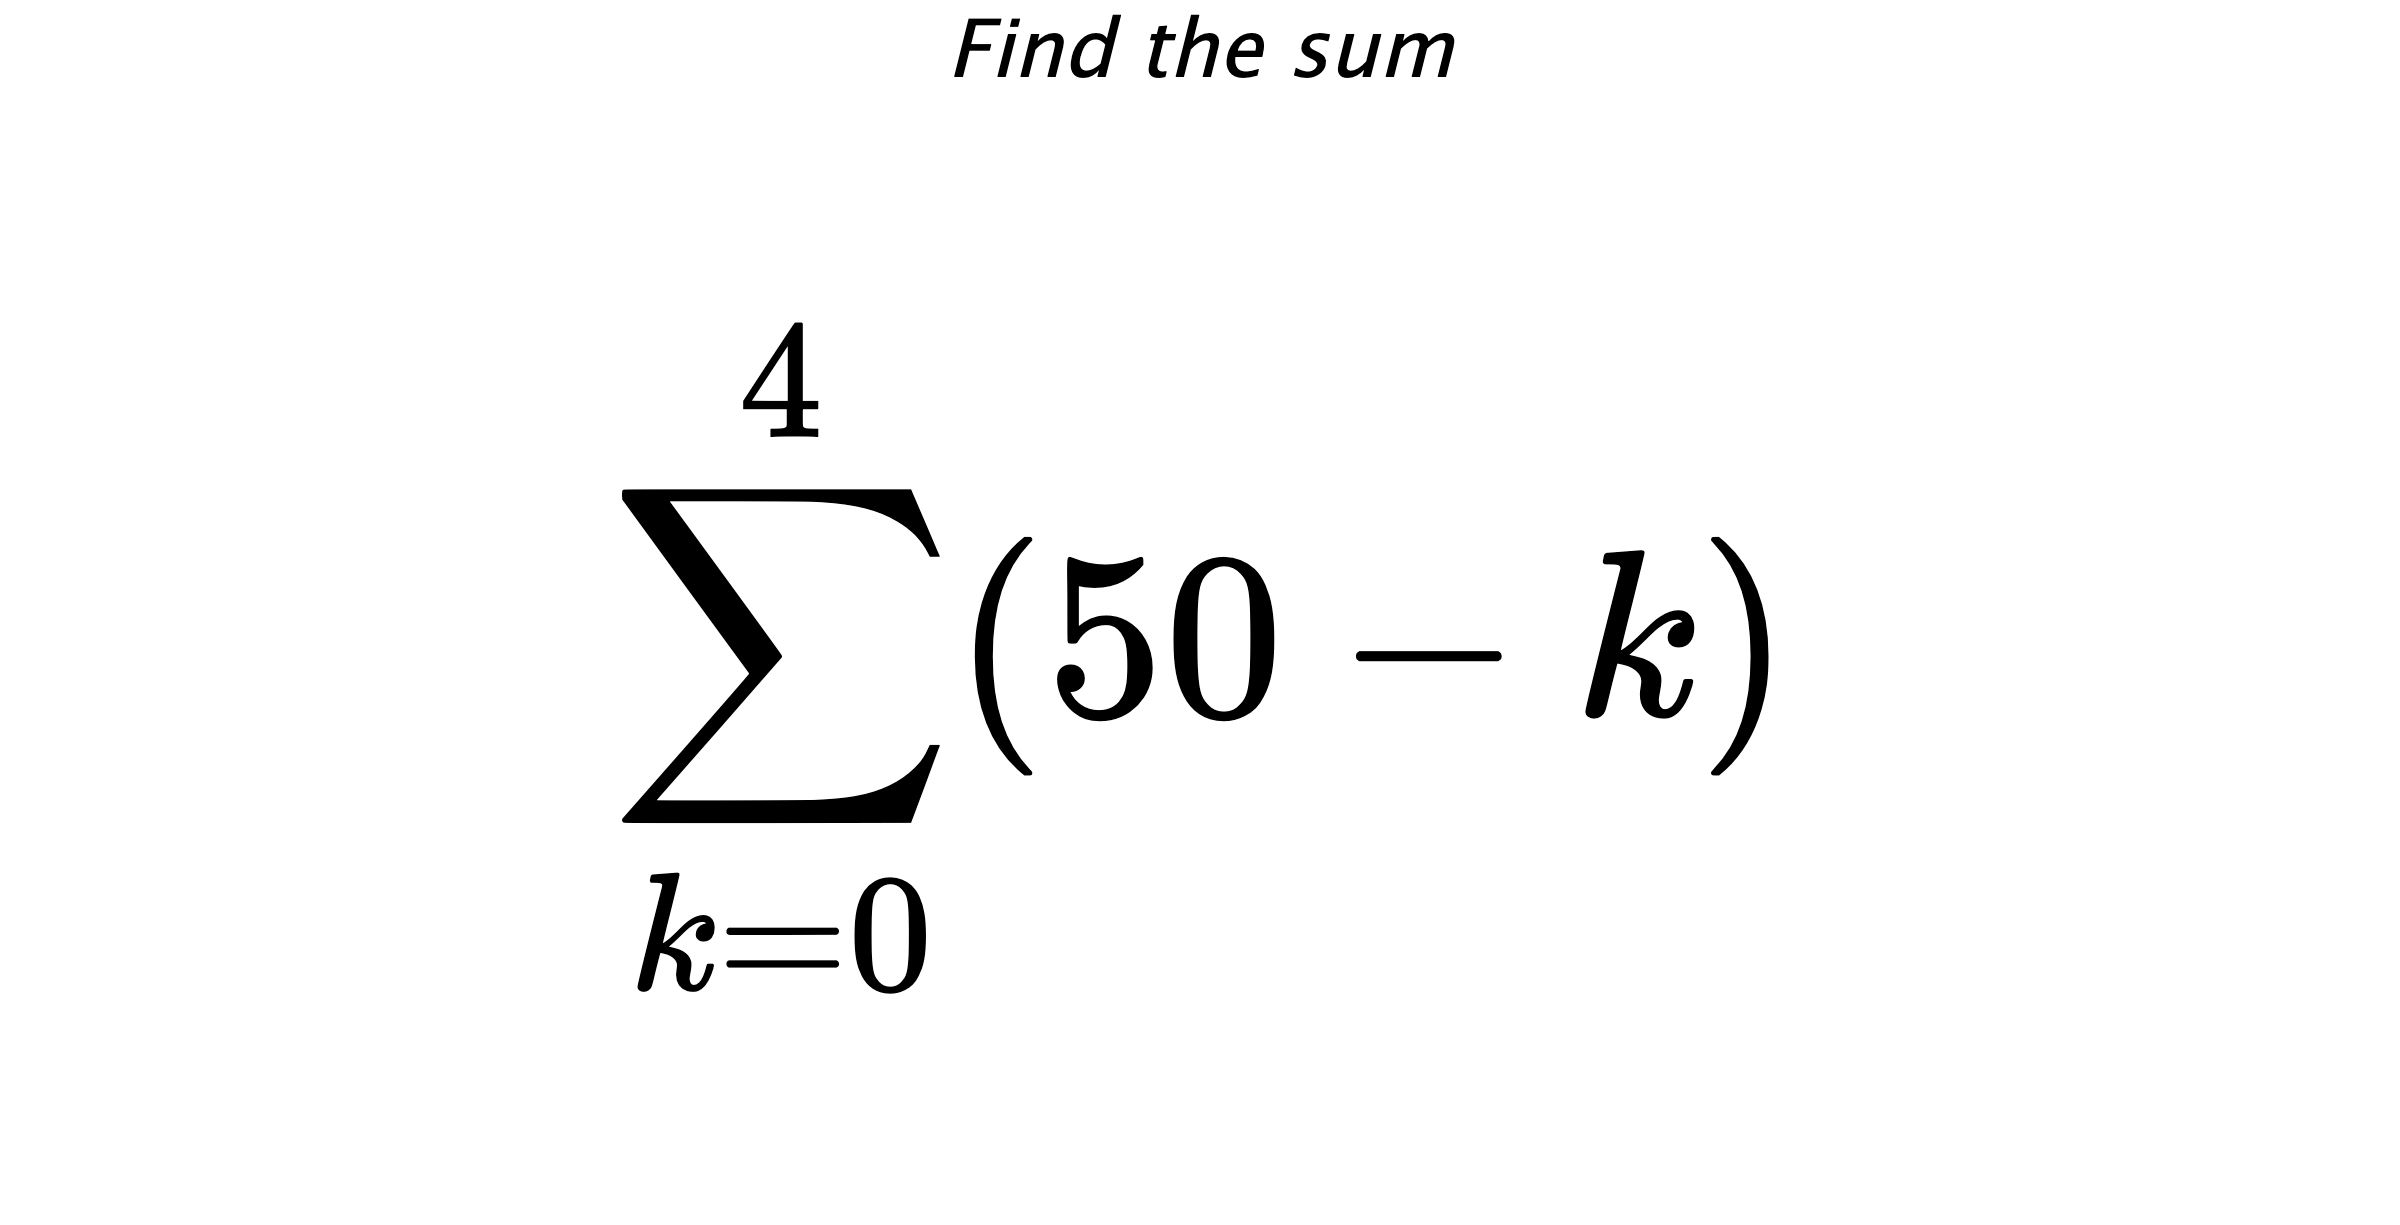 Find the sum $$ \sum_{k=0}^{4} (50-k)$$